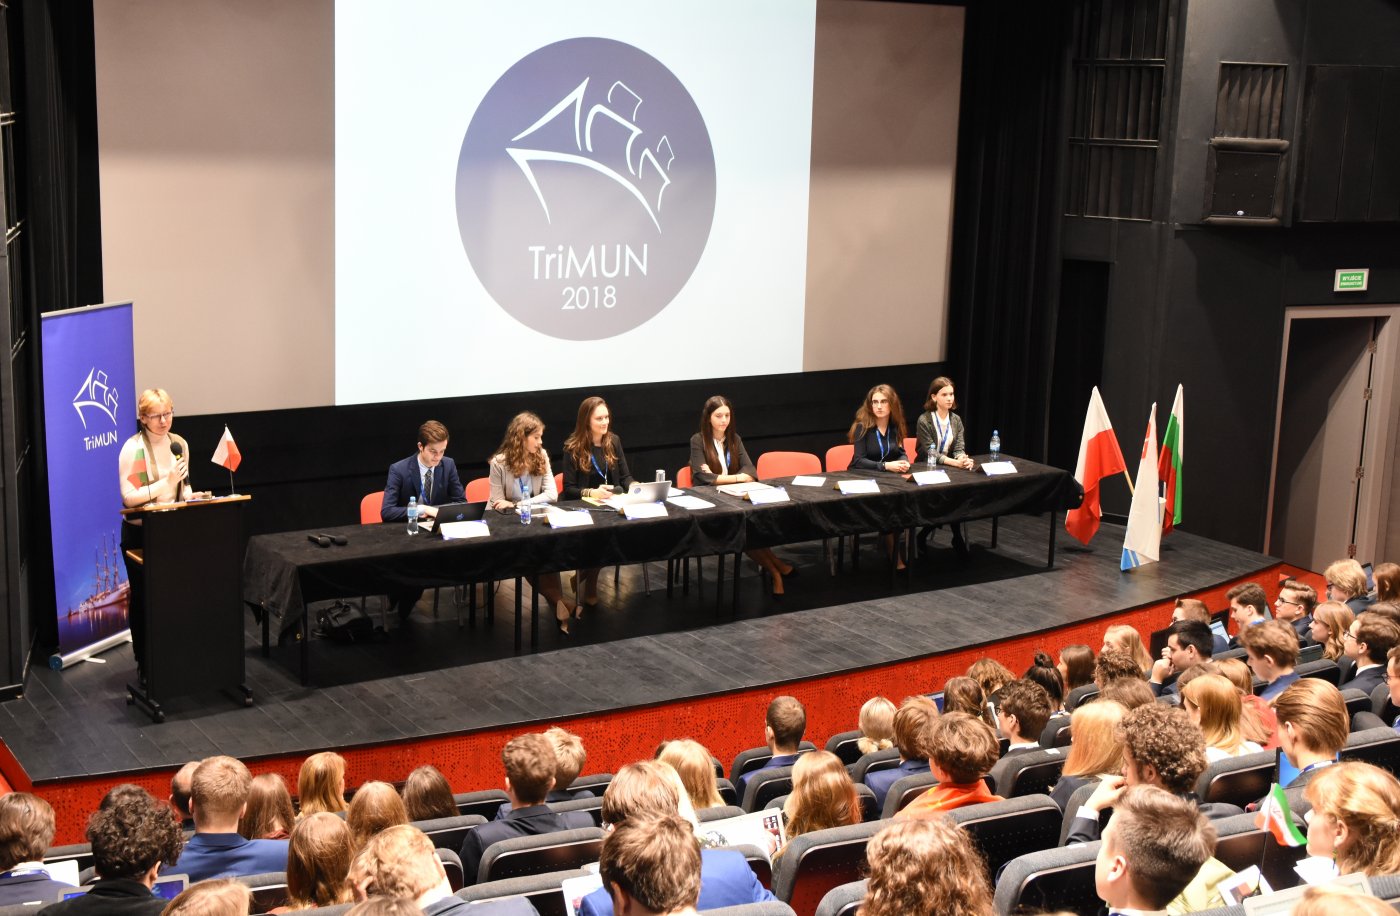 Młodzi debatują w Gdyni o problemach współczesnego świata